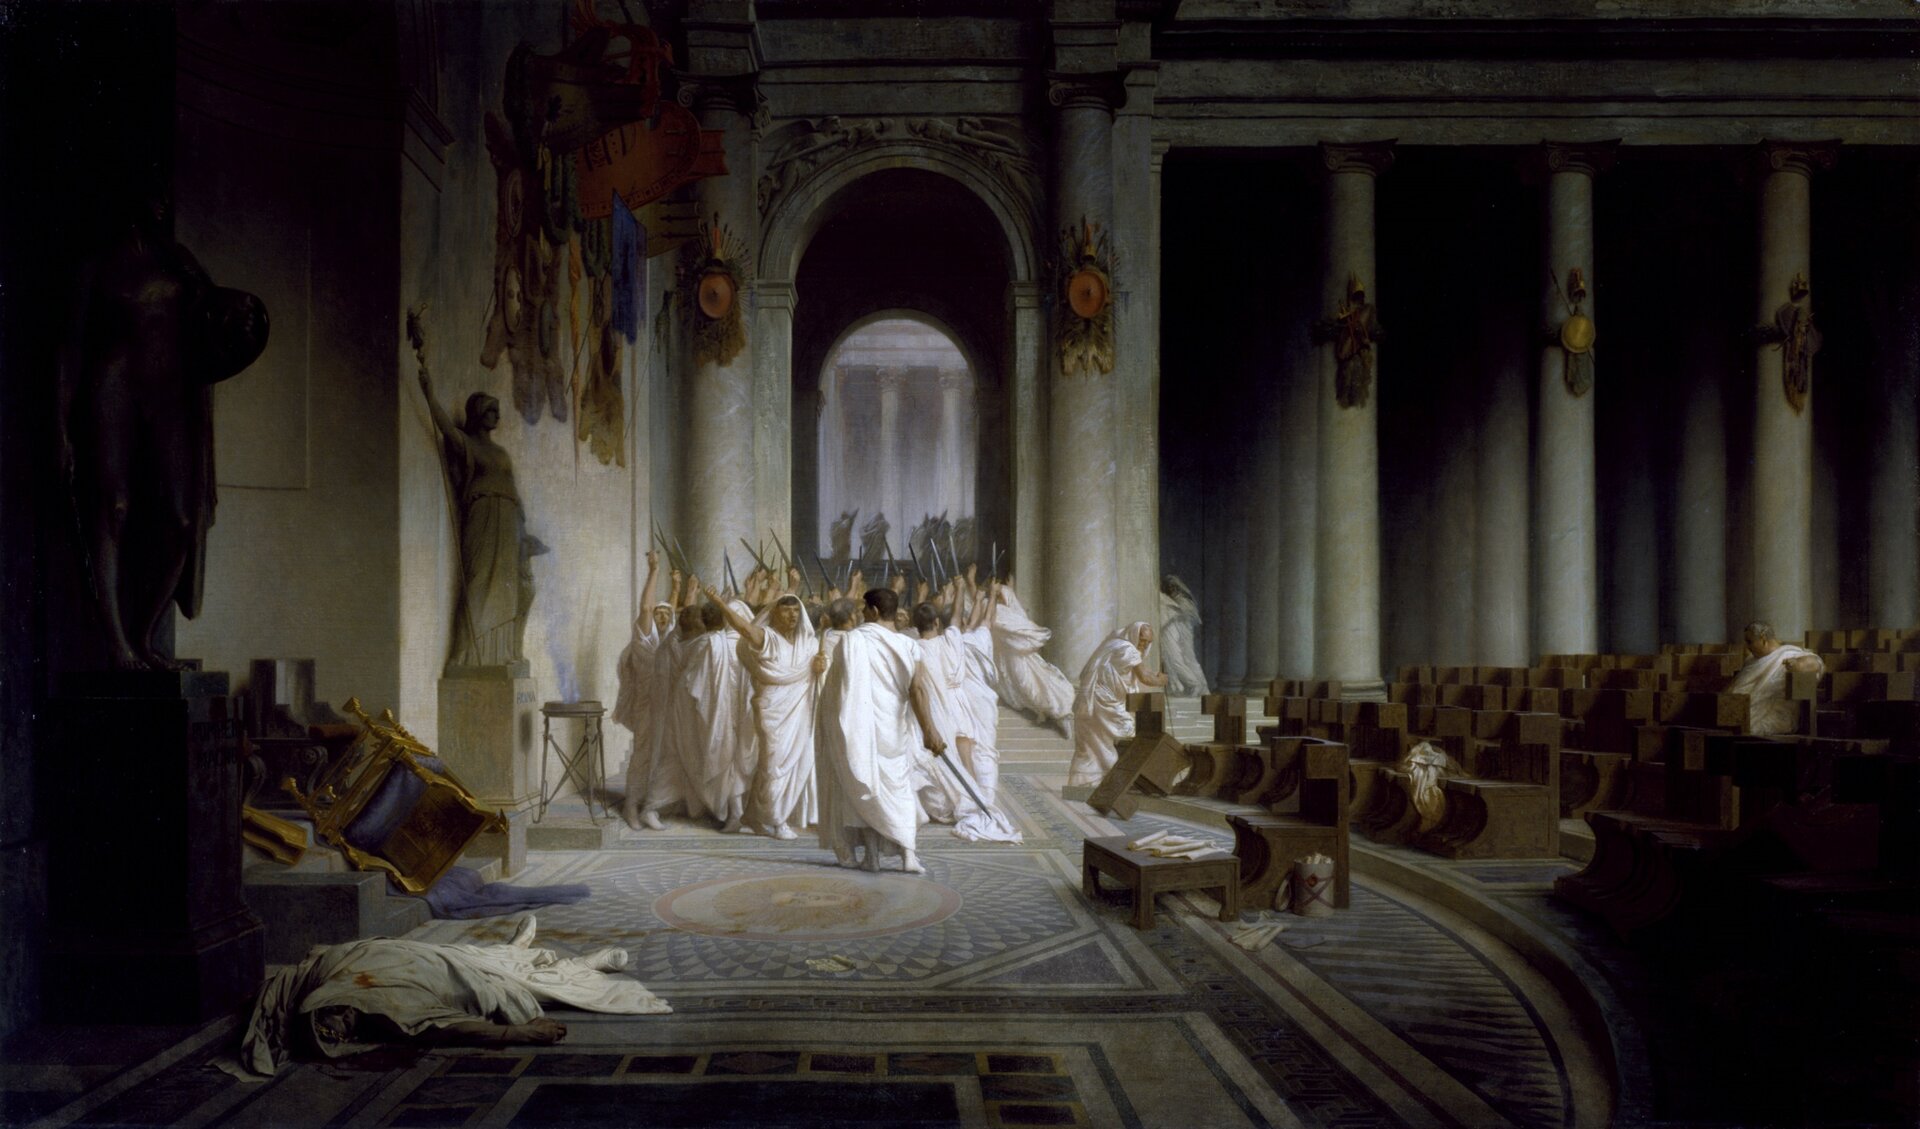 Ilustracja przedstawia obraz Jeana-Léona Gérômea „Śmierć Cezara”. Na obrazie znajduje się martwy mężczyzna w białych szatach, na których widać krew. W tle widoczni są inni ubrani na biało mężczyźni. Wszyscy mają ręce uniesione do góry. Postacie znajdują się w pomieszczeniu z licznymi ławkami, których część jest przewrócona. W oddali znajdują się także kolumny i wyjście z budynku. Nikt nie zwraca uwagi na martwego Cezara.